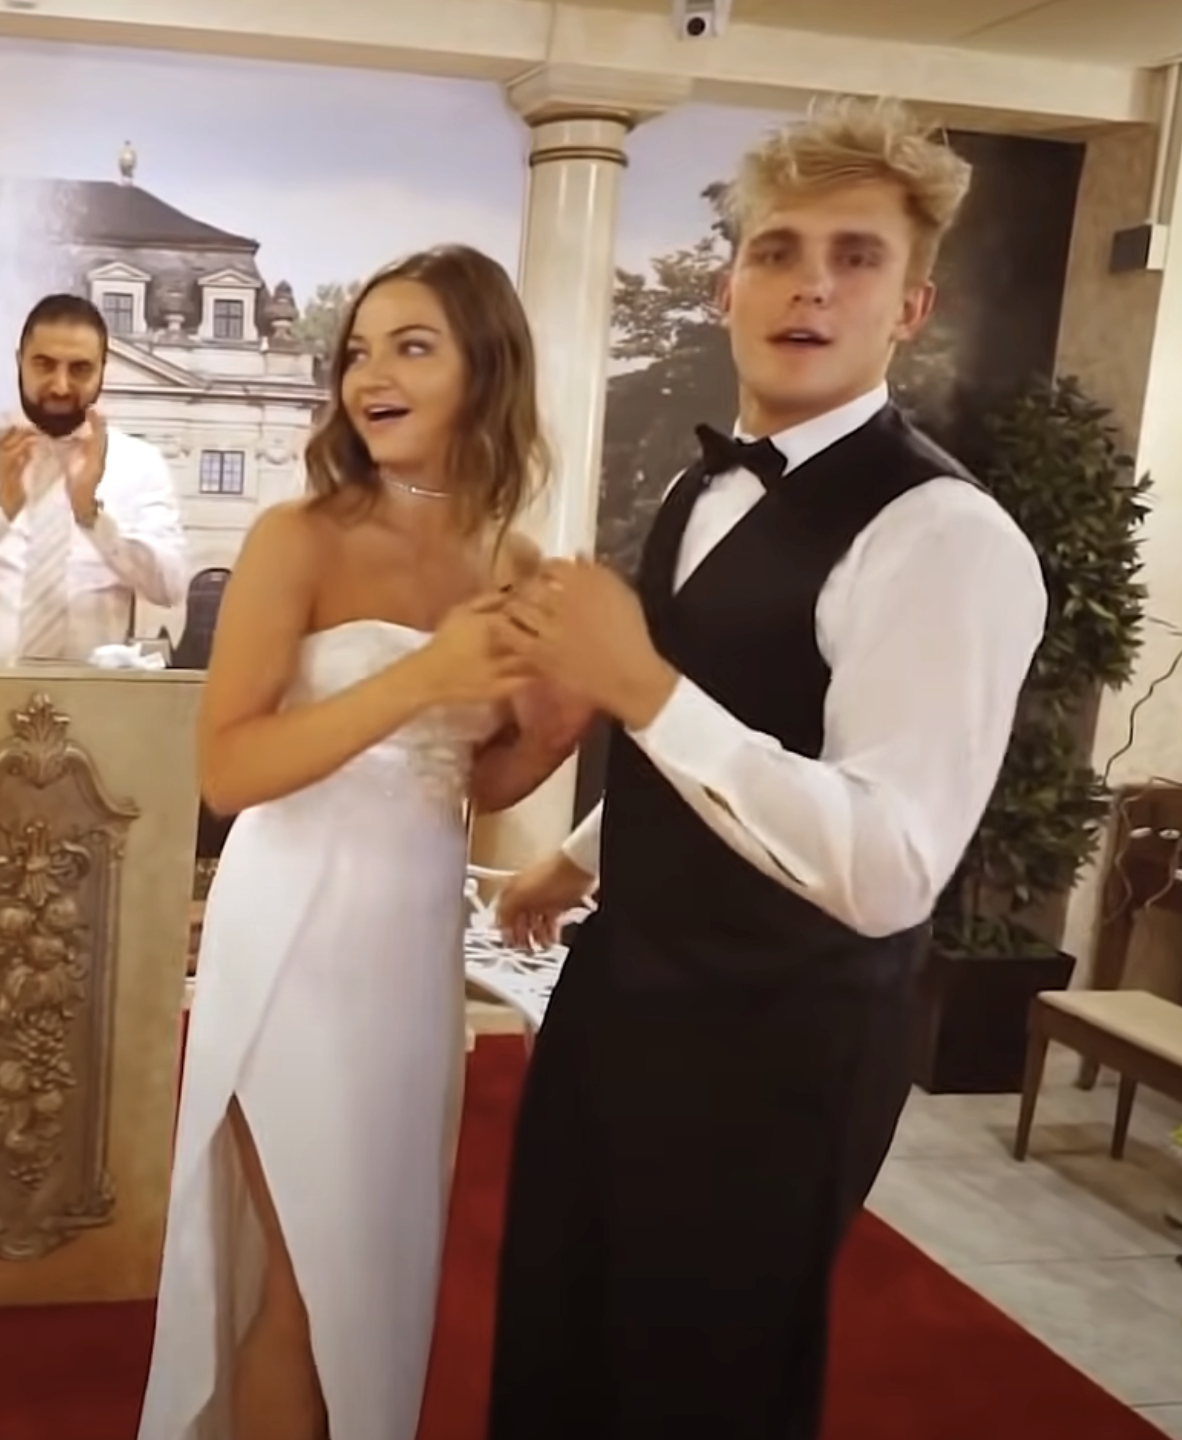 Erika and Logan at their fake wedding